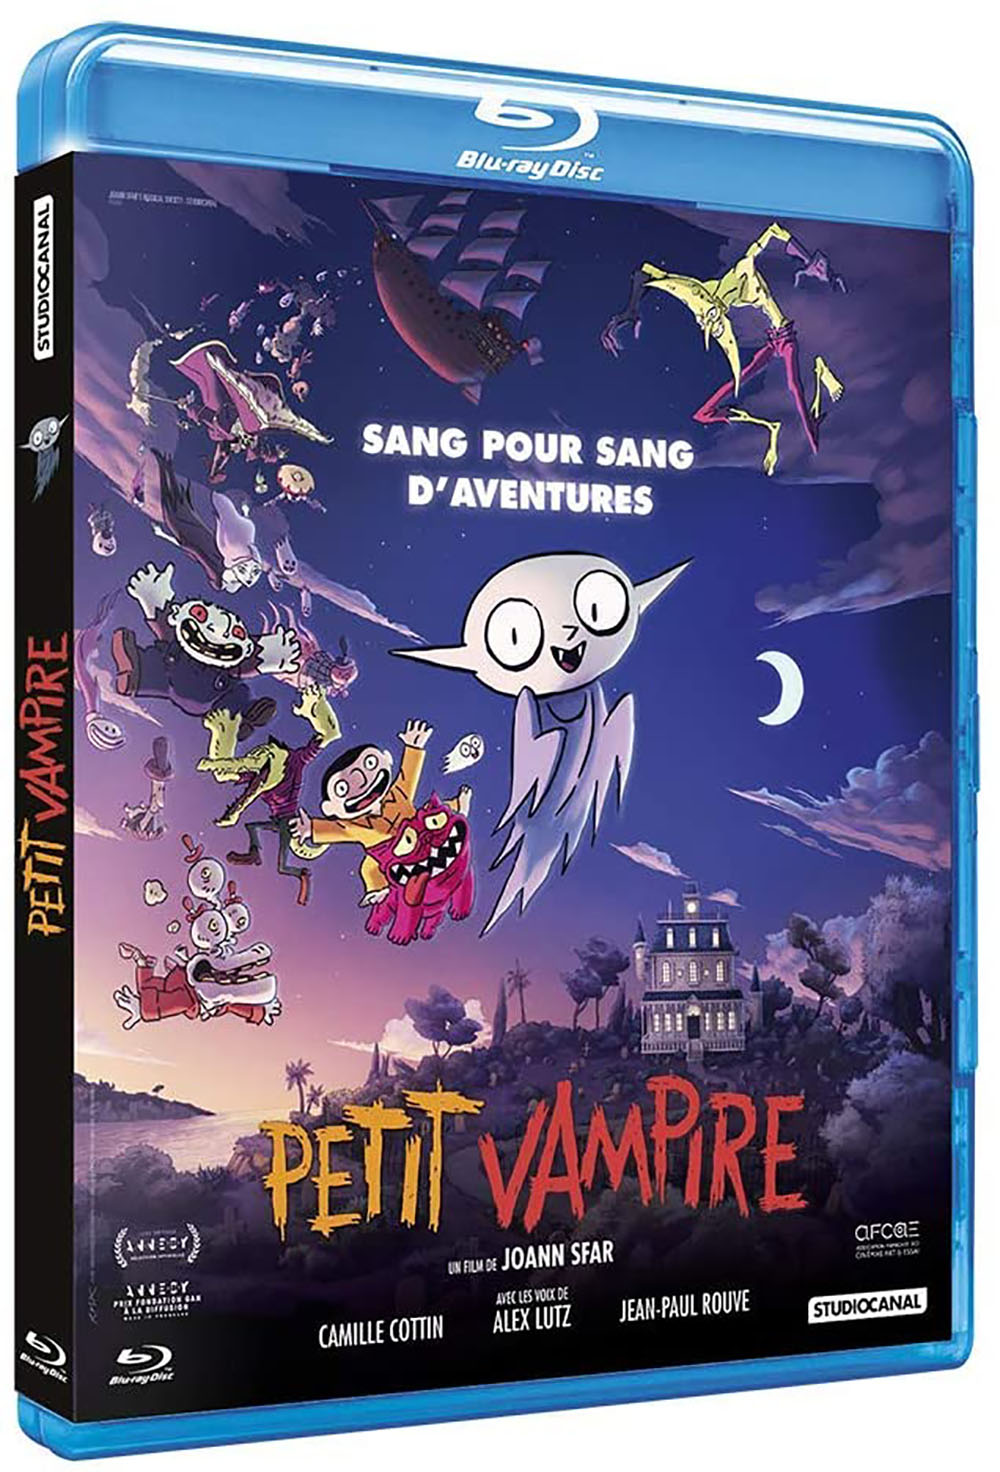 Petit Vampire le 10 février : adorable film d'horreur signé Joann Sfar